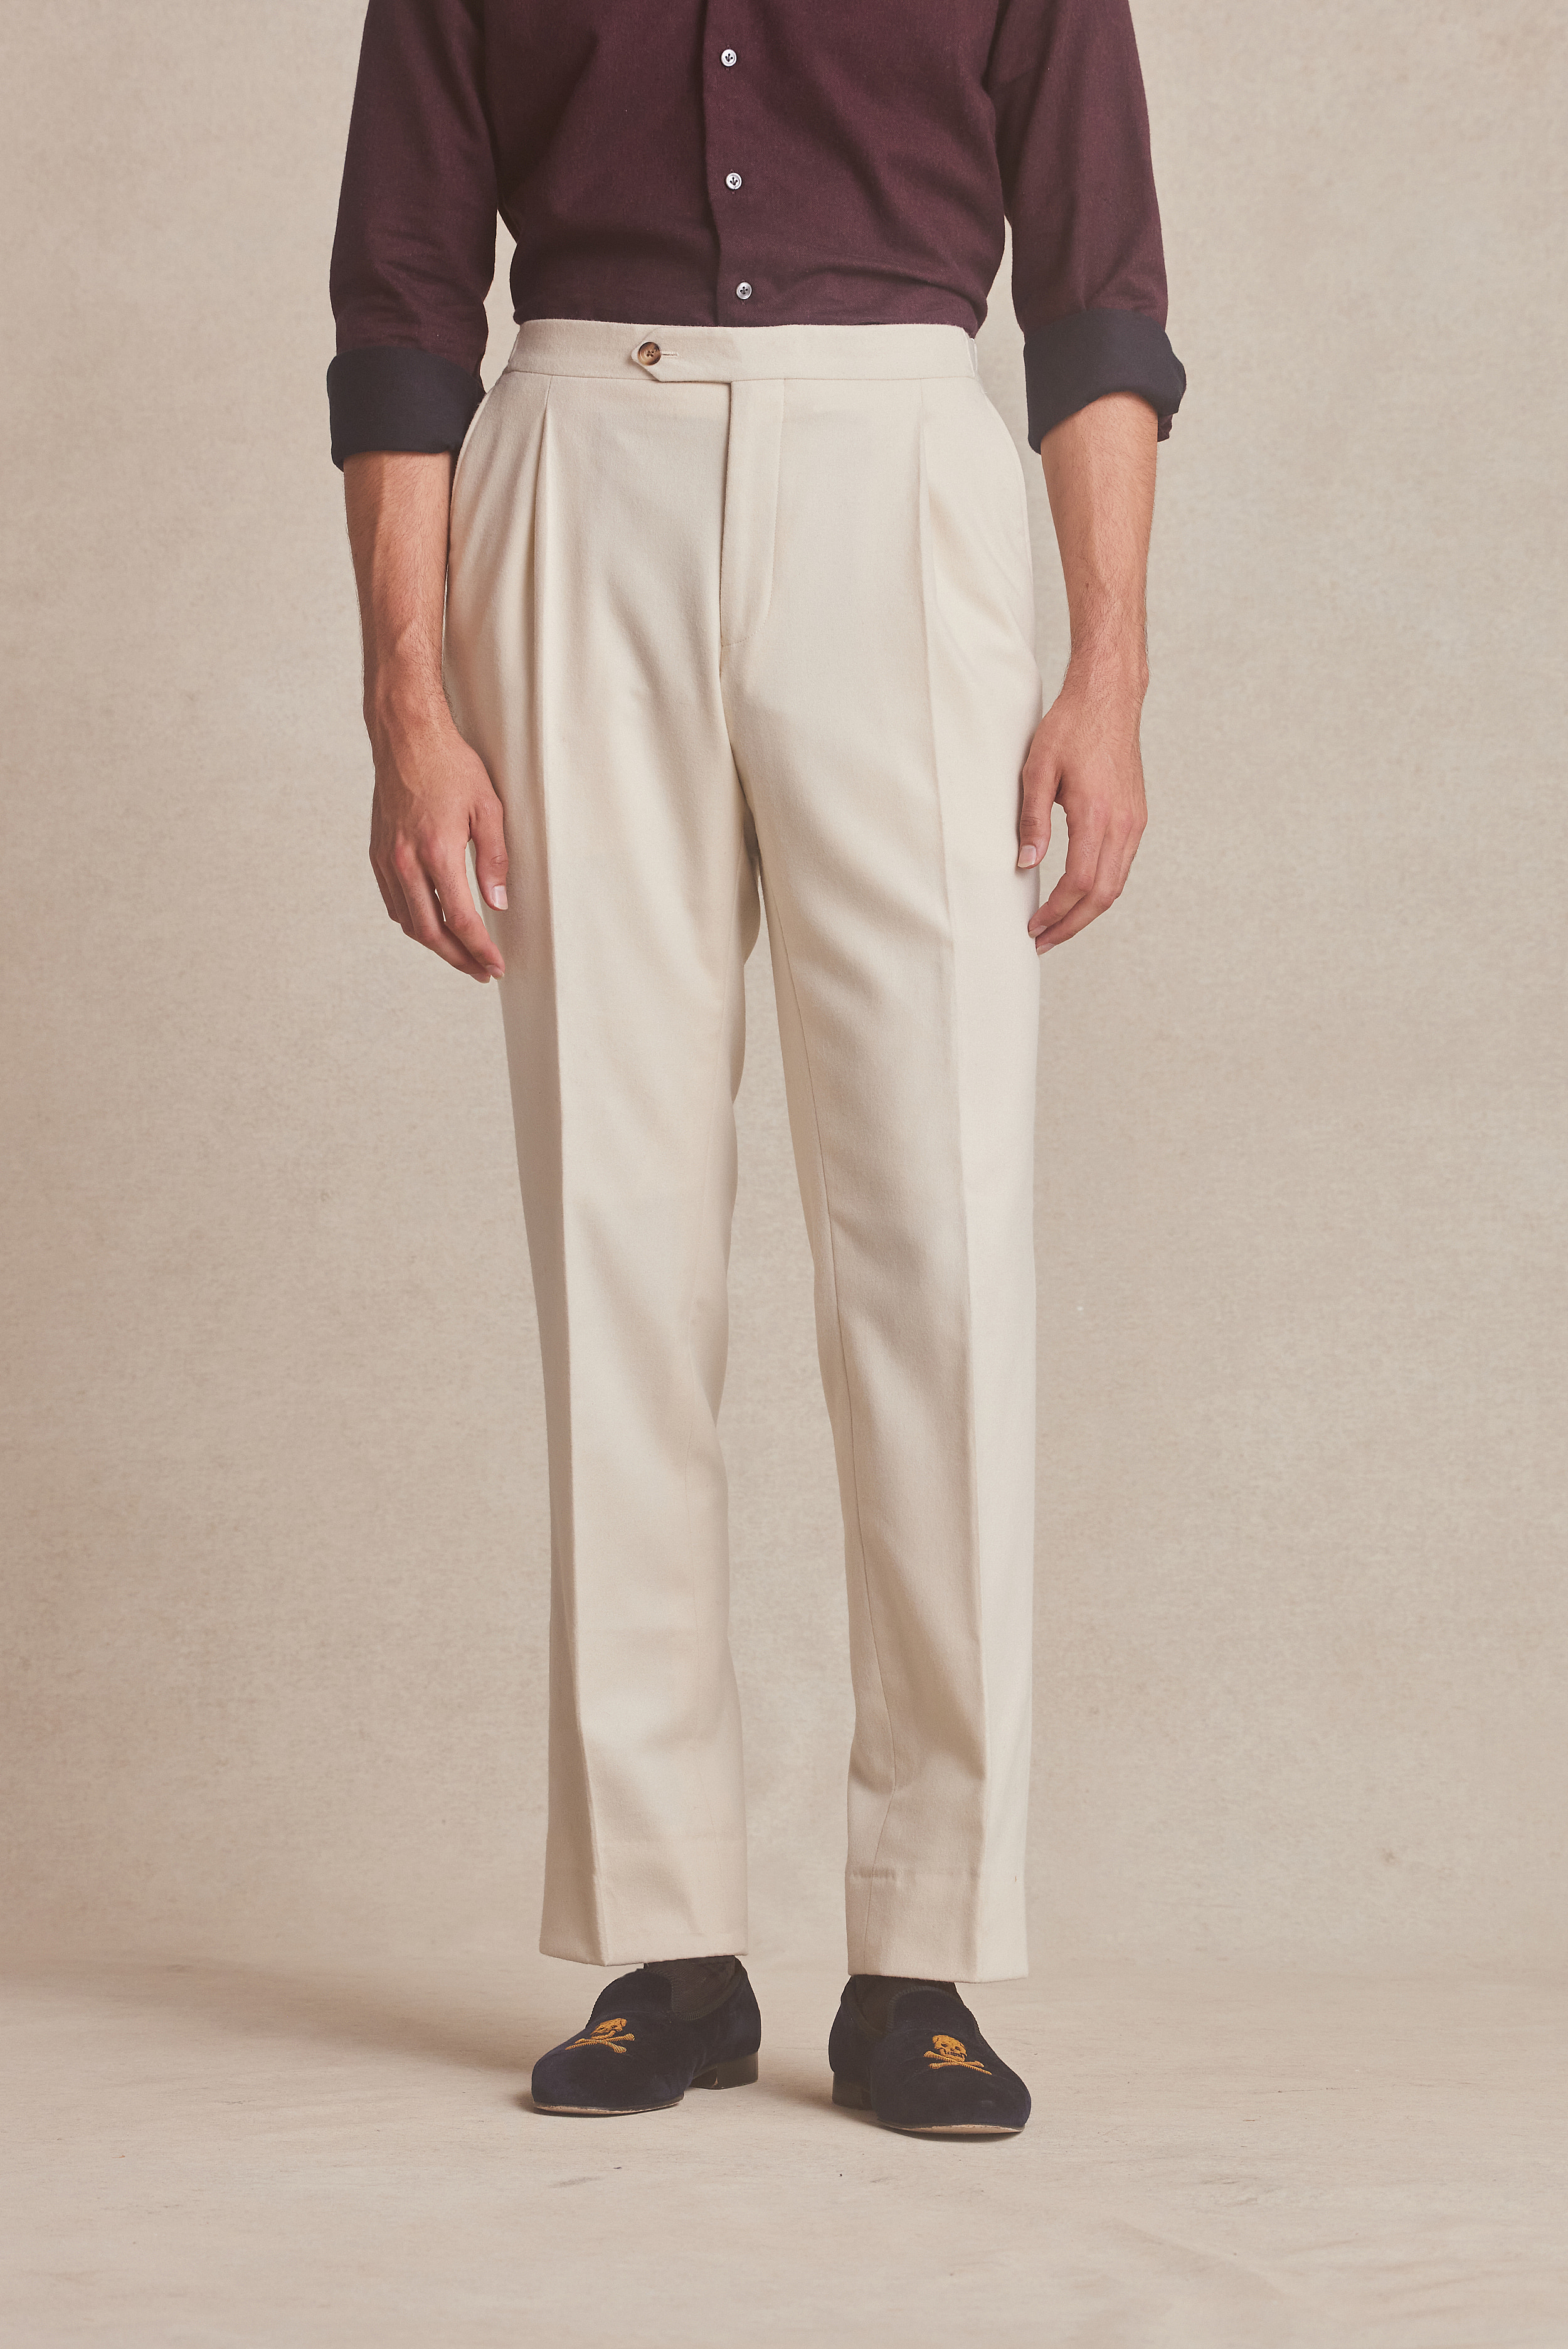 Cream Wool Single Pleat Flannel Trousers  New  Lingwood